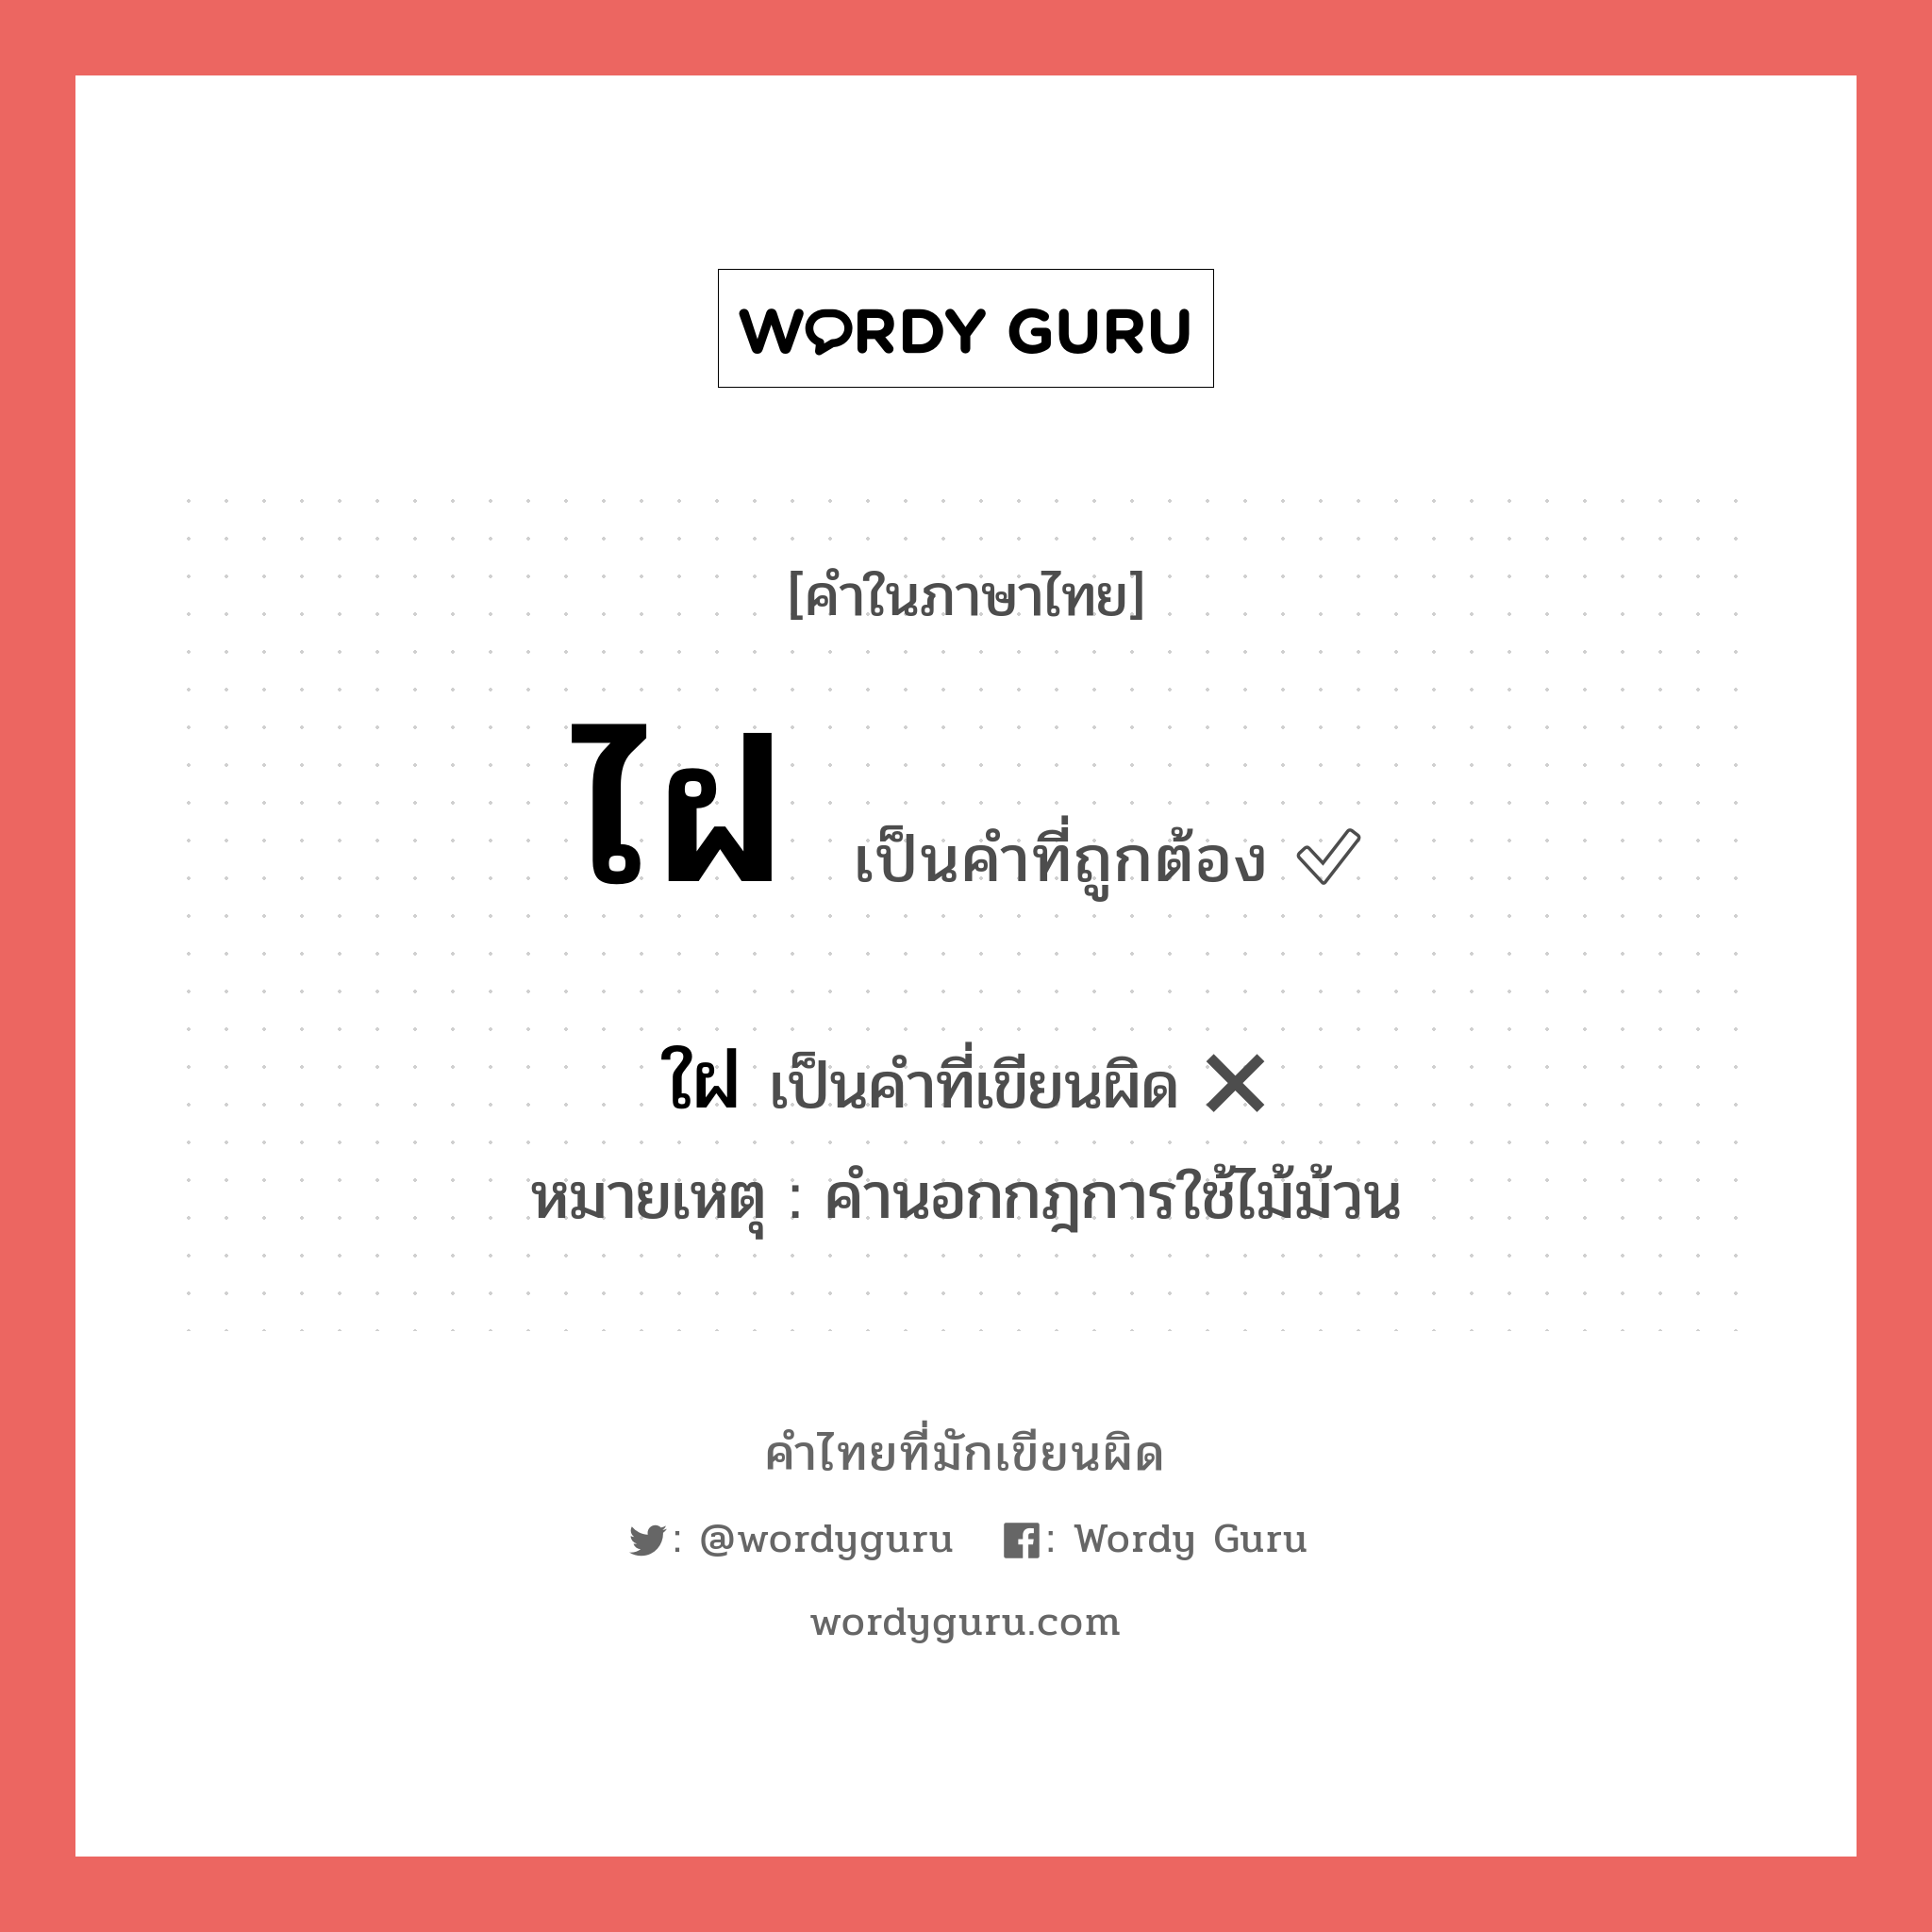 ไฝ หรือ ใฝ คำไหนเขียนถูก?, คำในภาษาไทยที่มักเขียนผิด ไฝ คำที่ผิด ❌ ใฝ หมายเหตุ คำนอกกฎการใช้ไม้ม้วน